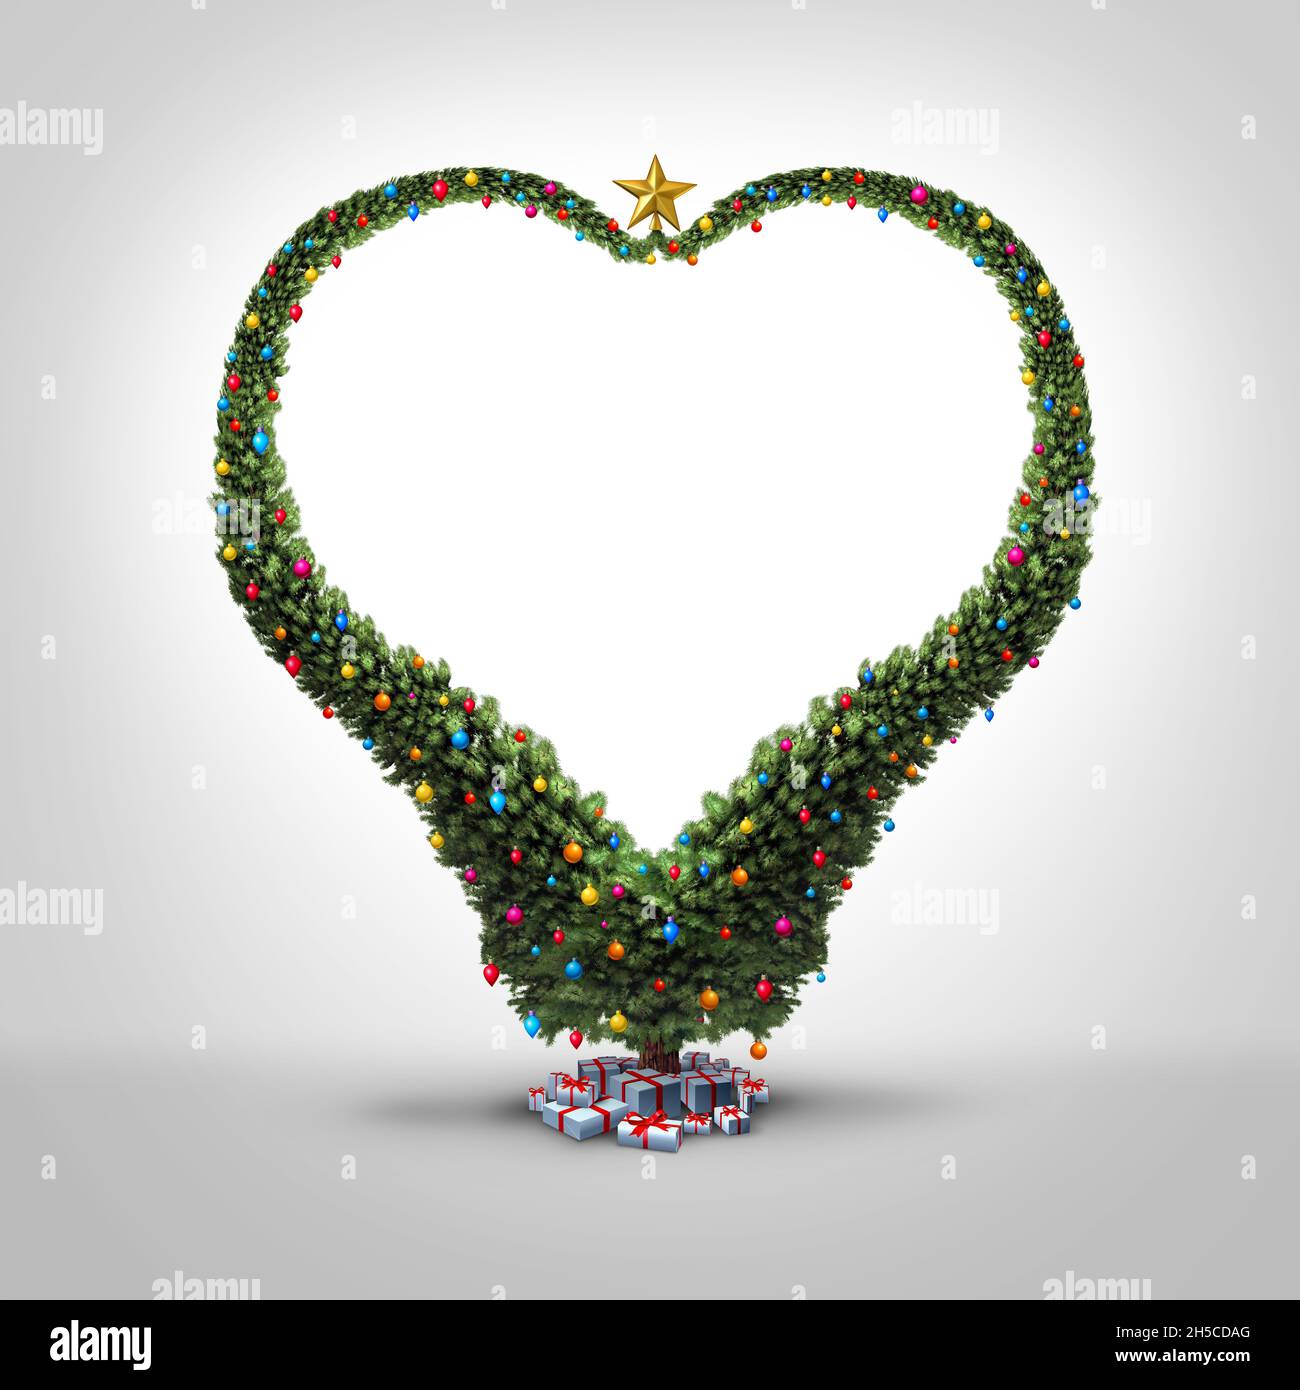 Natale l'amore di festa come un albero divertente di Natale modellato come un cuore come un sempreverde decorato swirly in un disegno festivo. Foto Stock